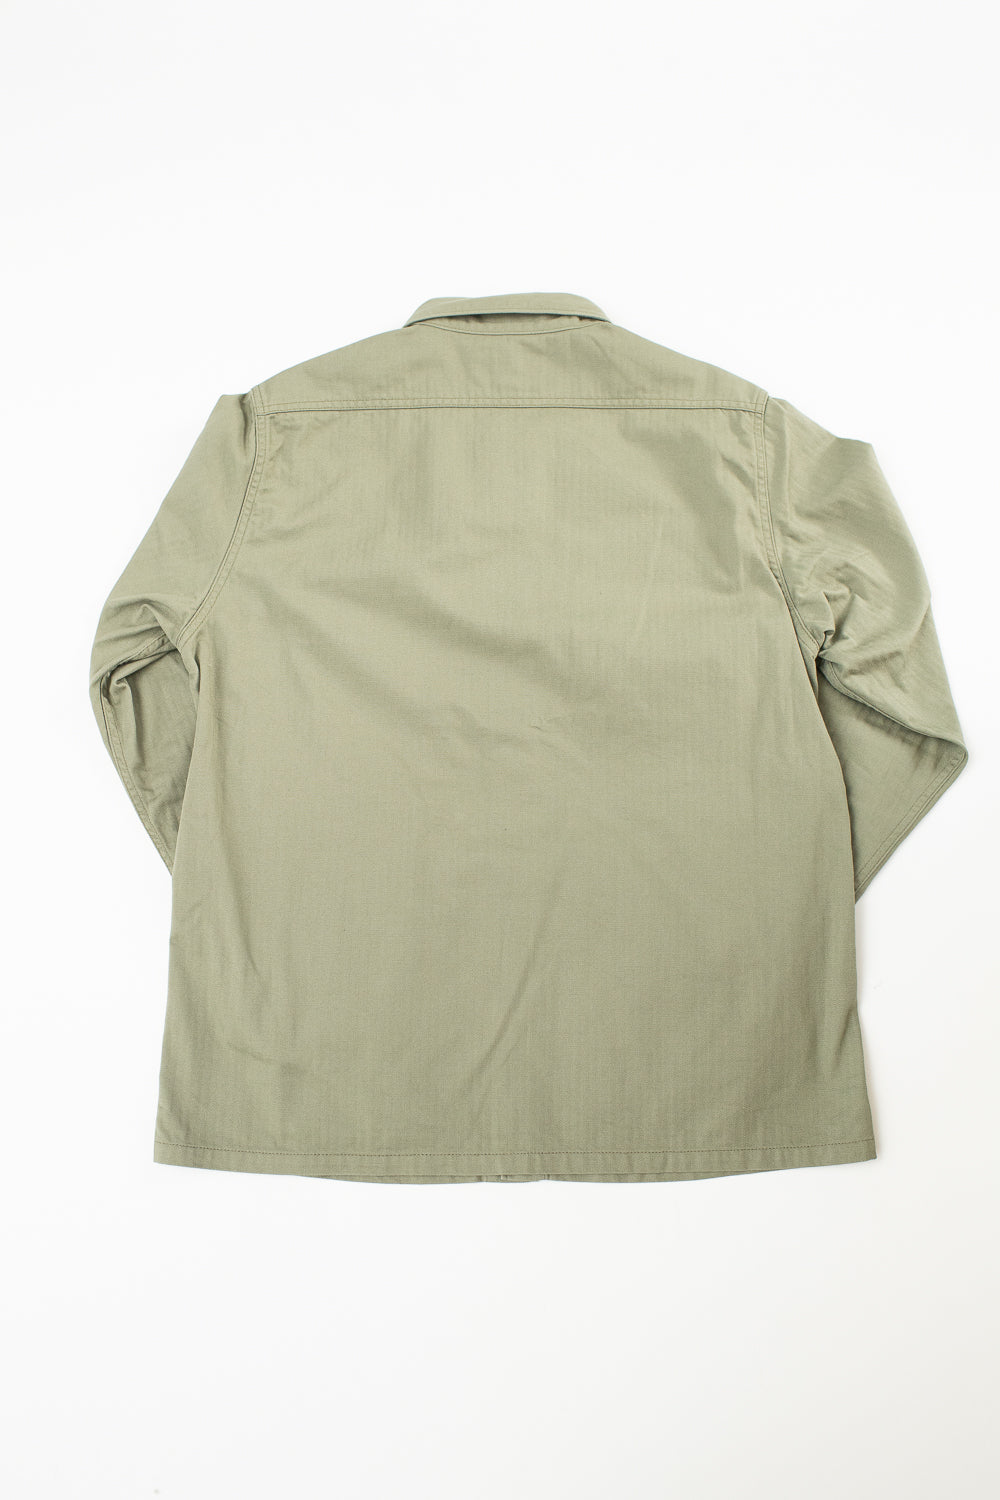 IHSH-385-ODG - 9oz Herringbone Military Shirt - Olive Drab Green